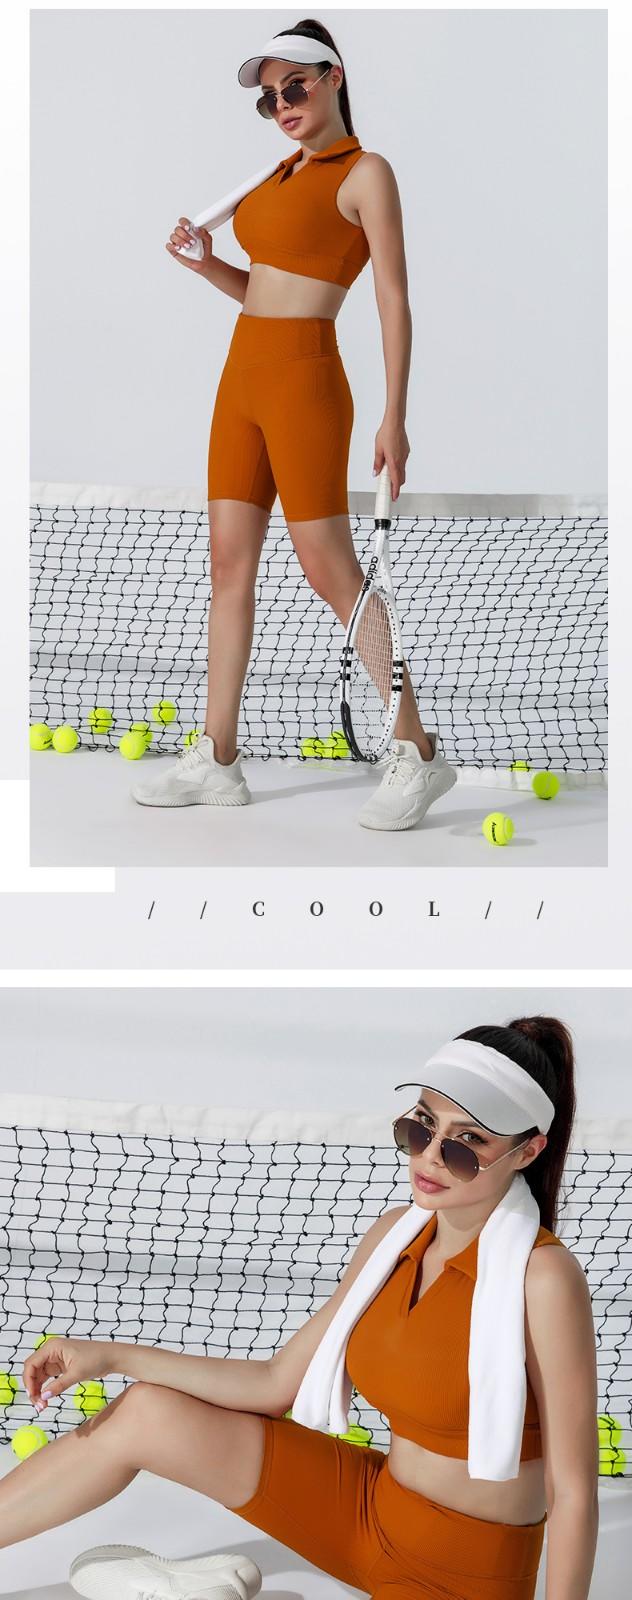 INGOR tennis ladies clothing type at the gym